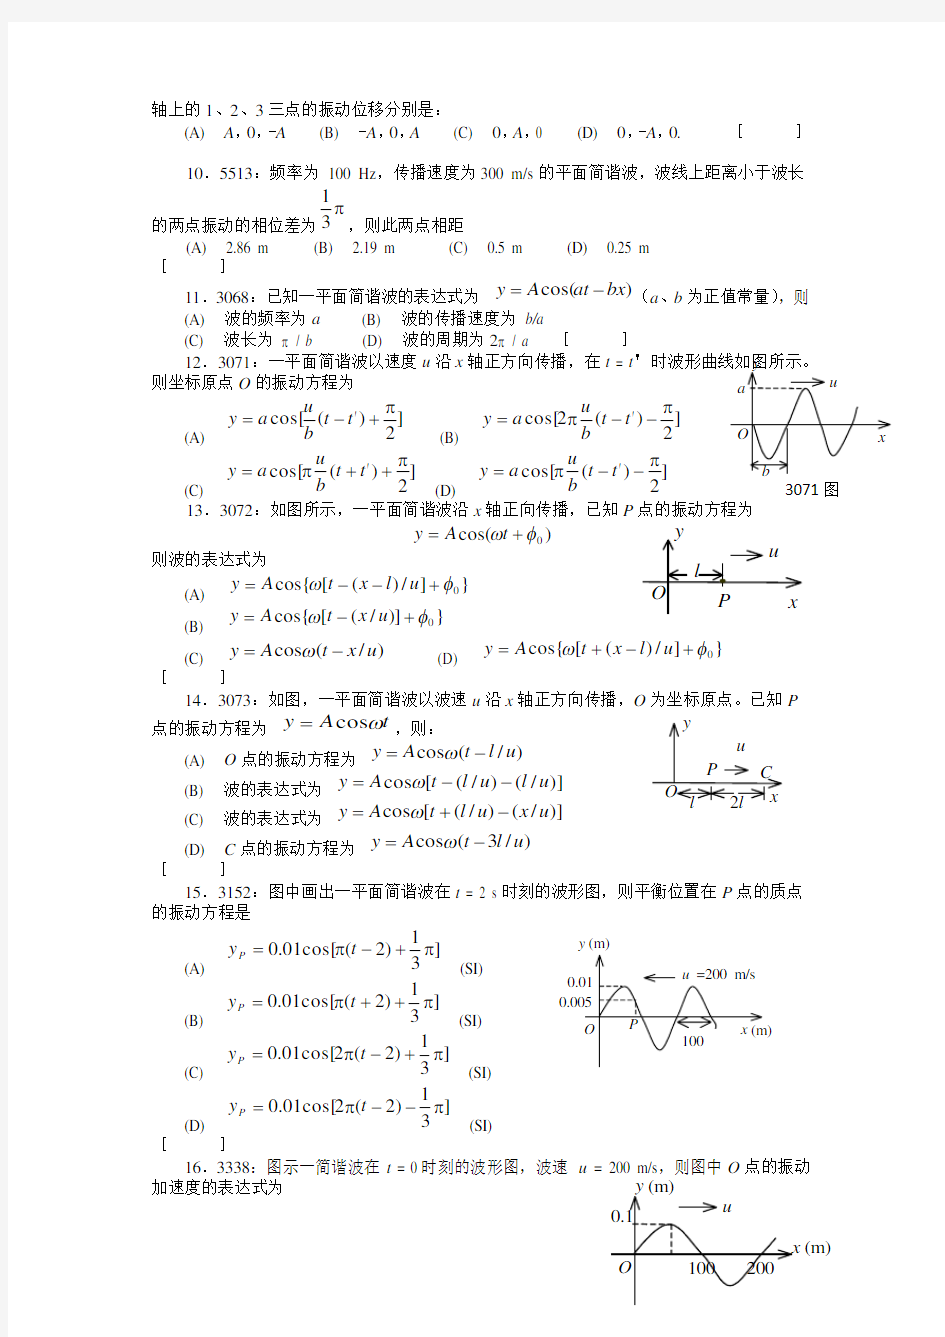 清华大学《大学物理》习题库试题及答案__05_机械波习题